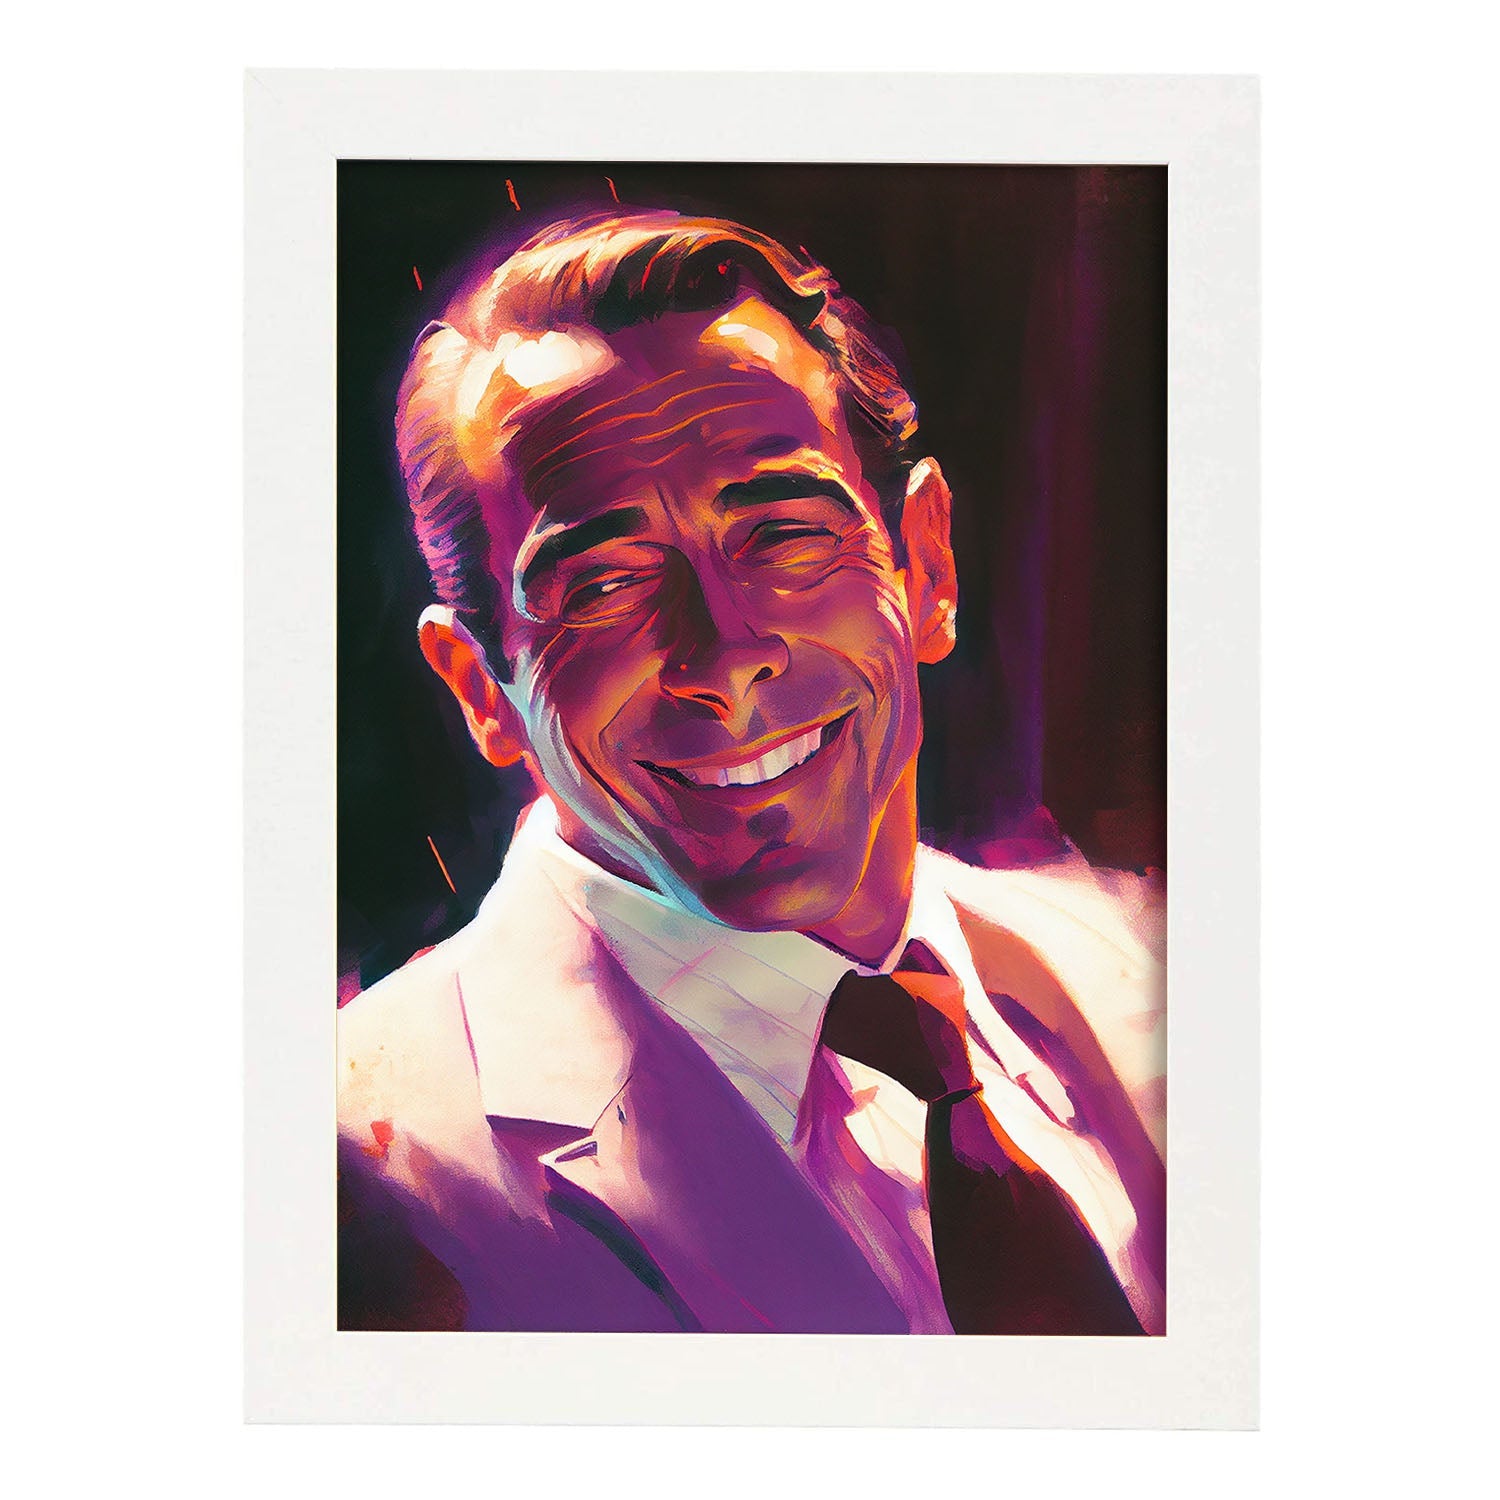 Nacnic Humphrey Bogart sonriendo estilo dinámico de estilo Pixar d. Estampados de arte de pared estético para el diseño de dormitorio o sala de estar.-Artwork-Nacnic-A4-Marco Blanco-Nacnic Estudio SL